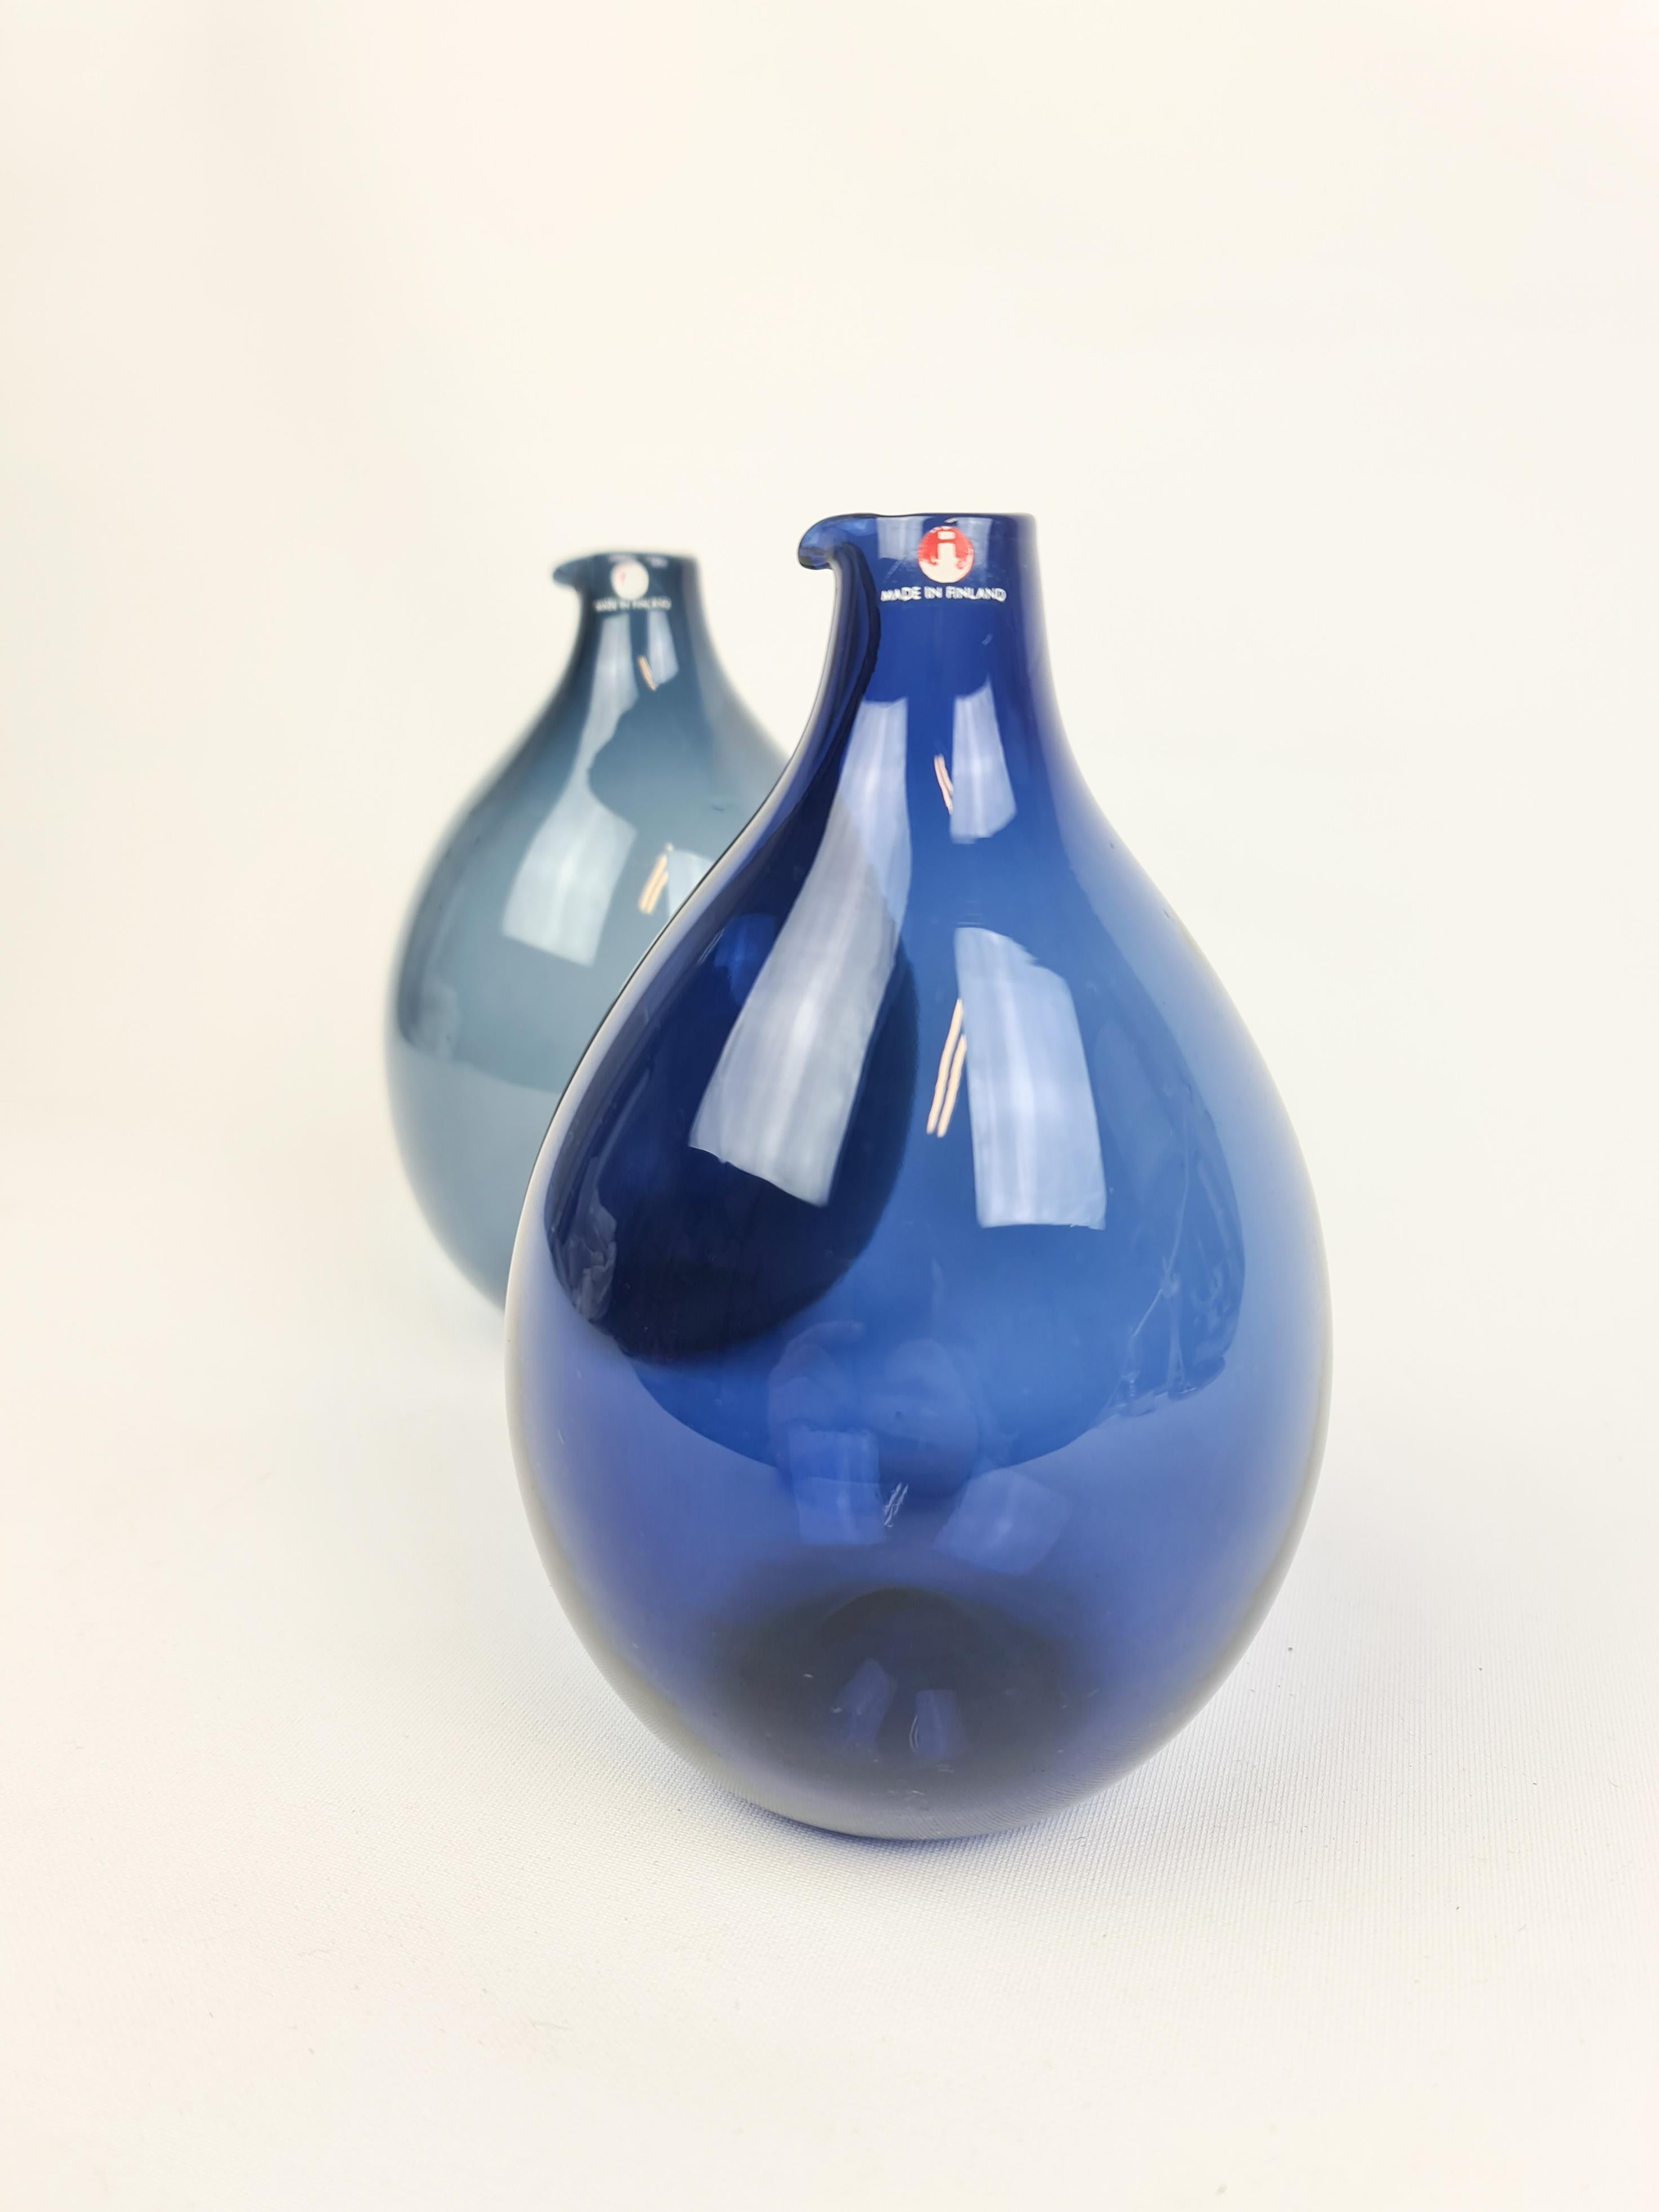 Finnish Midcentury Timo Sarpaneva Bird Bottles / Vases Iittala